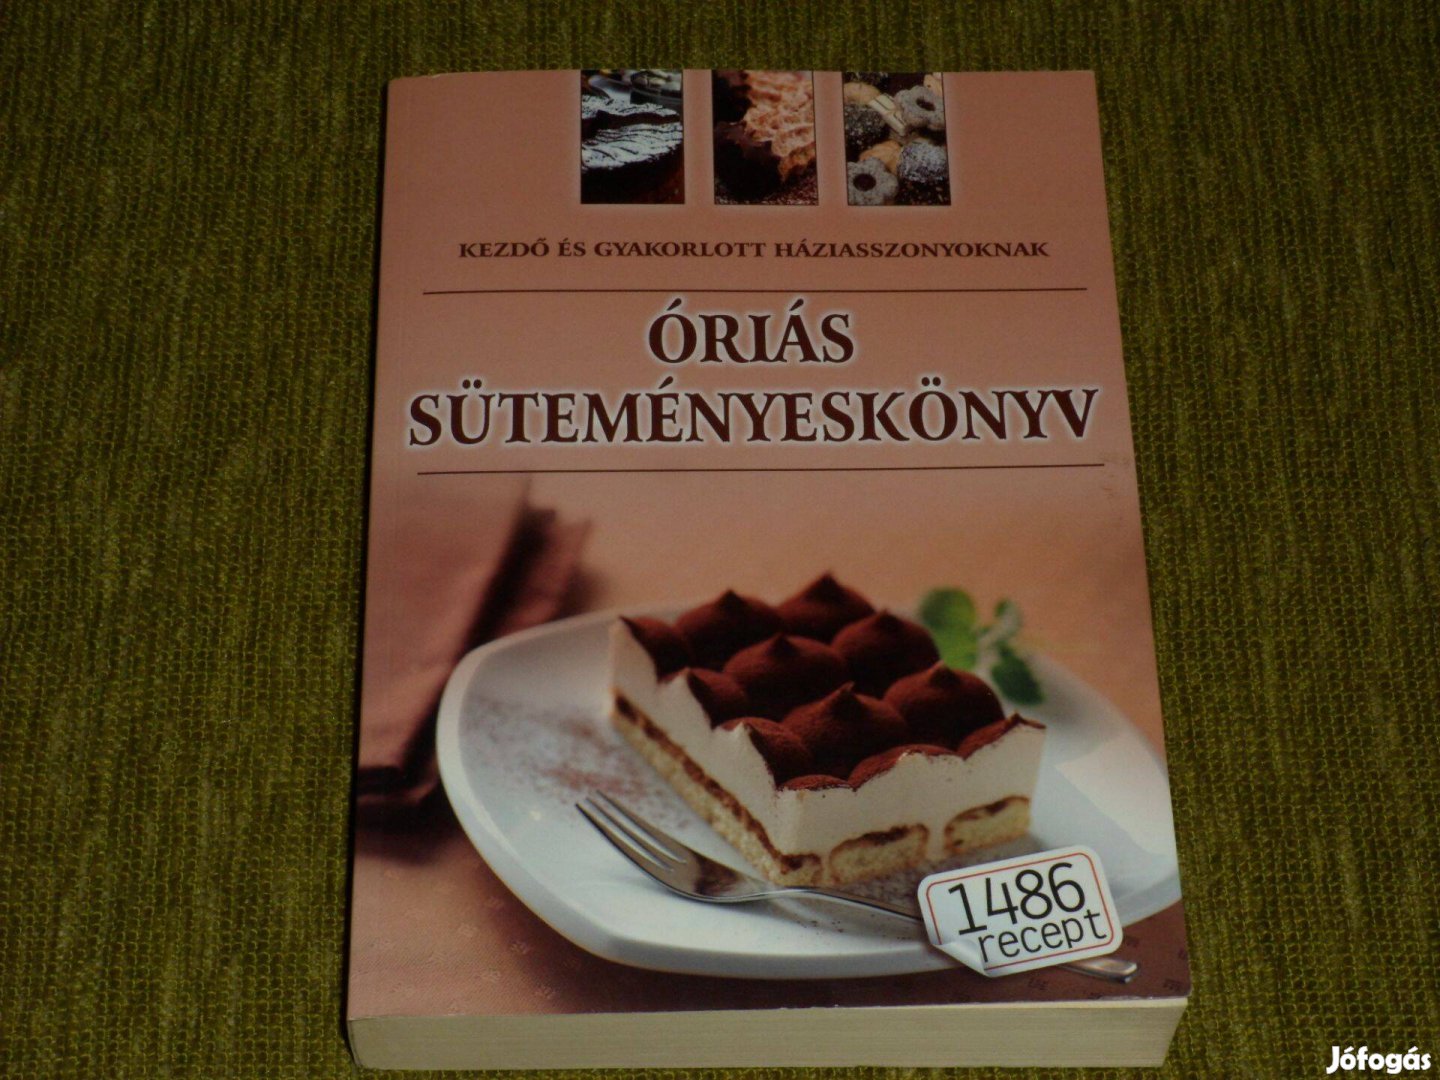 Óriás süteményeskönyv - 1486 recept - kezdő és gyakorlott háziasszonyo